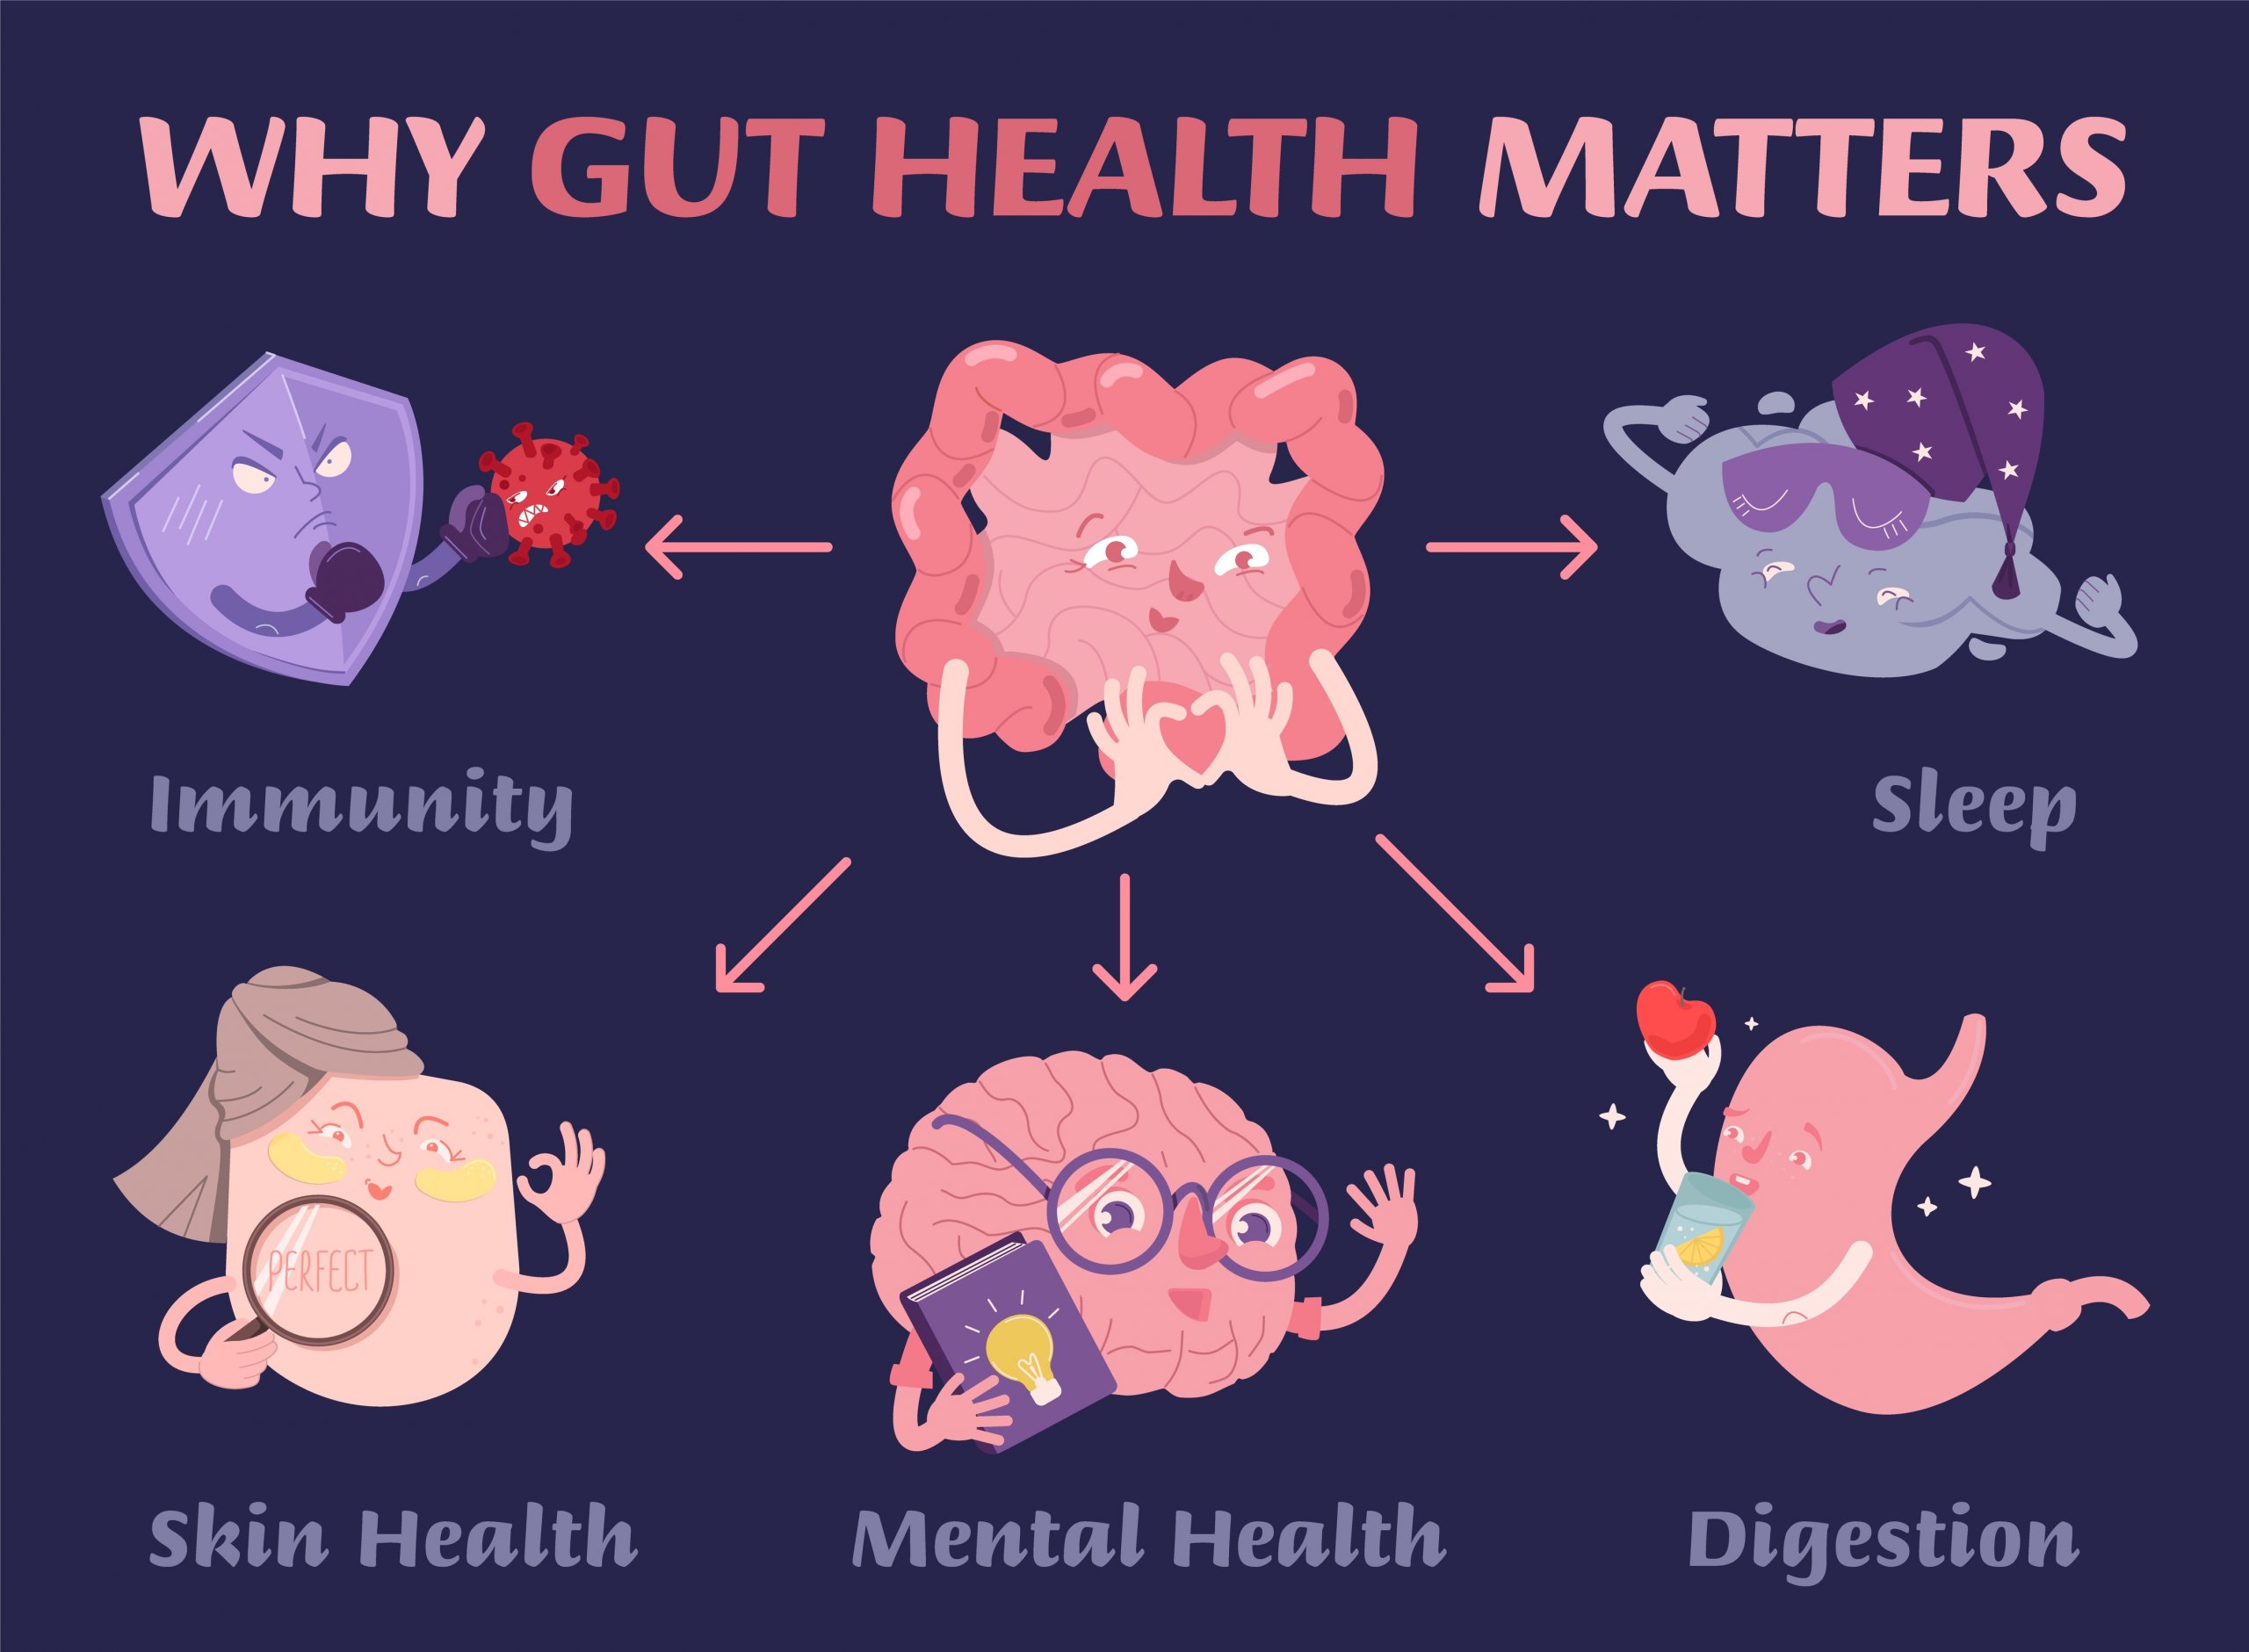 Gut health matters